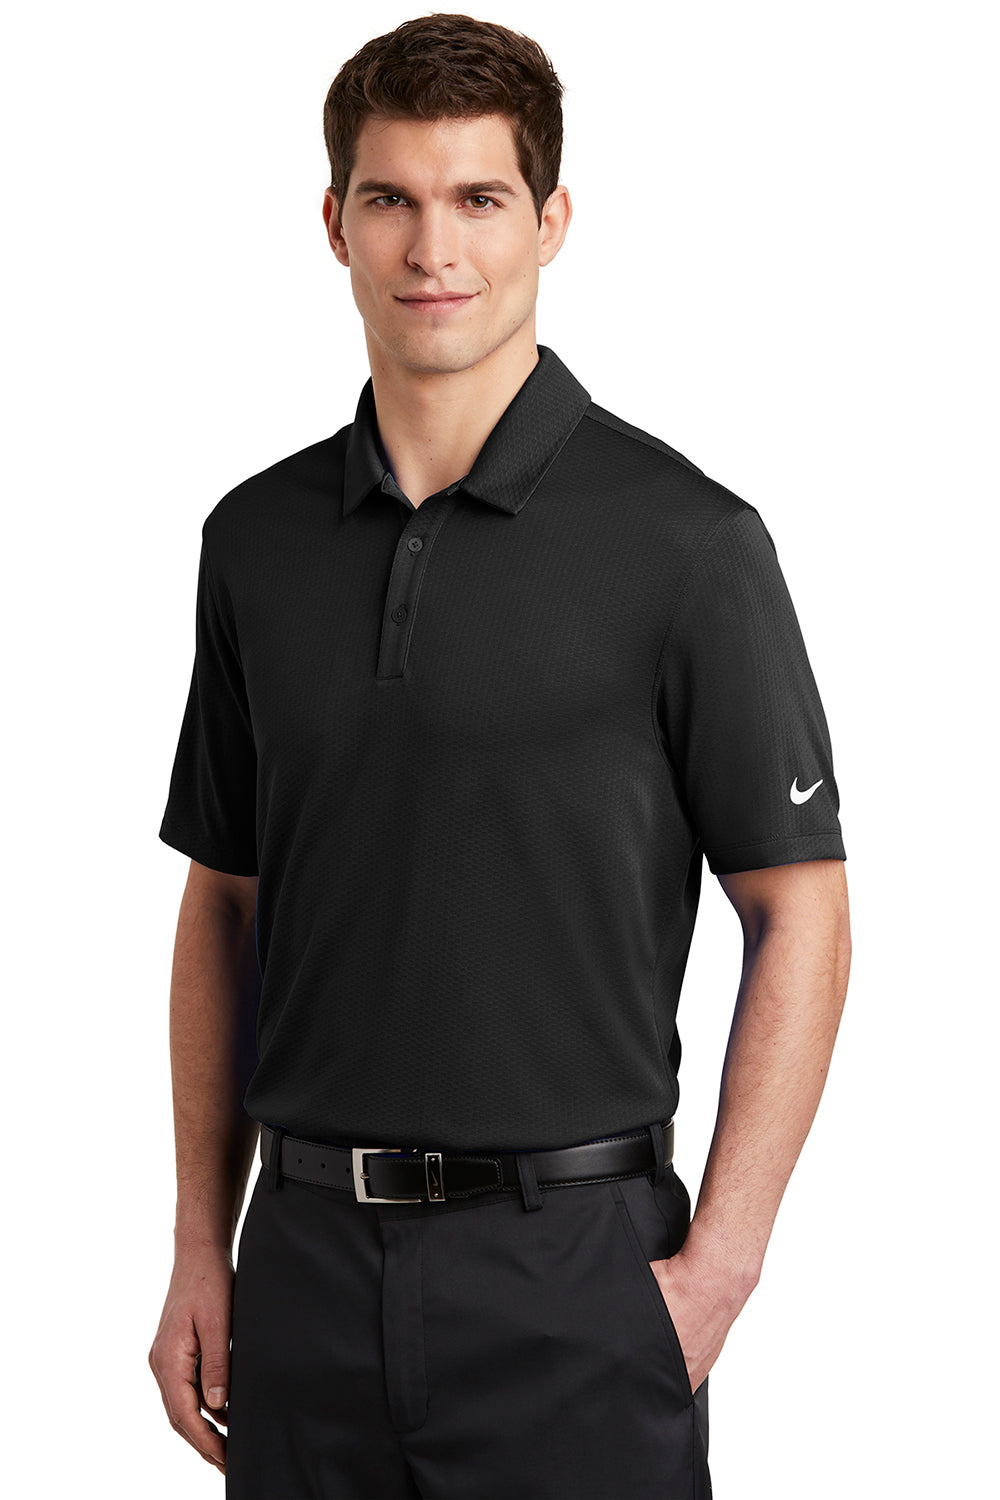 Nike NKAH6266 Mens Dri-Fit Moisture Wicking Short Sleeve Polo Shirt Black Model 3Q